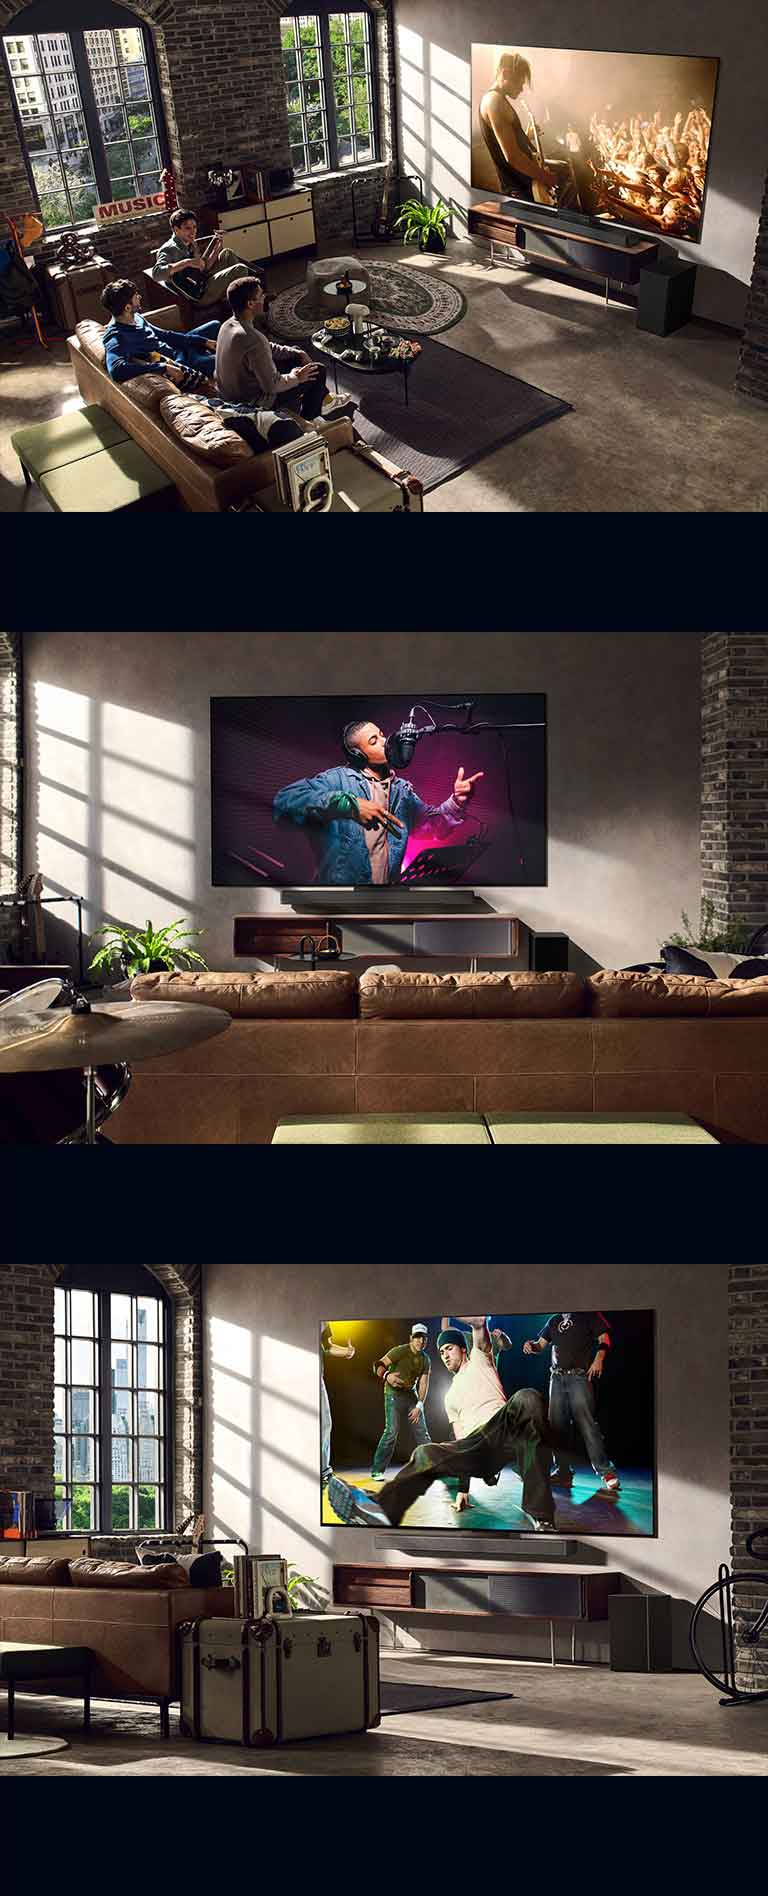 Има три лайфстайл изображения. От горе надолу: трима мъже се наслаждават на концертно видео във всекидневната. На стената има телевизор LG, показващ сцена от музикален запис, и телевизор LG на стената, показващ сцена на брейк танц в диагонален изглед.